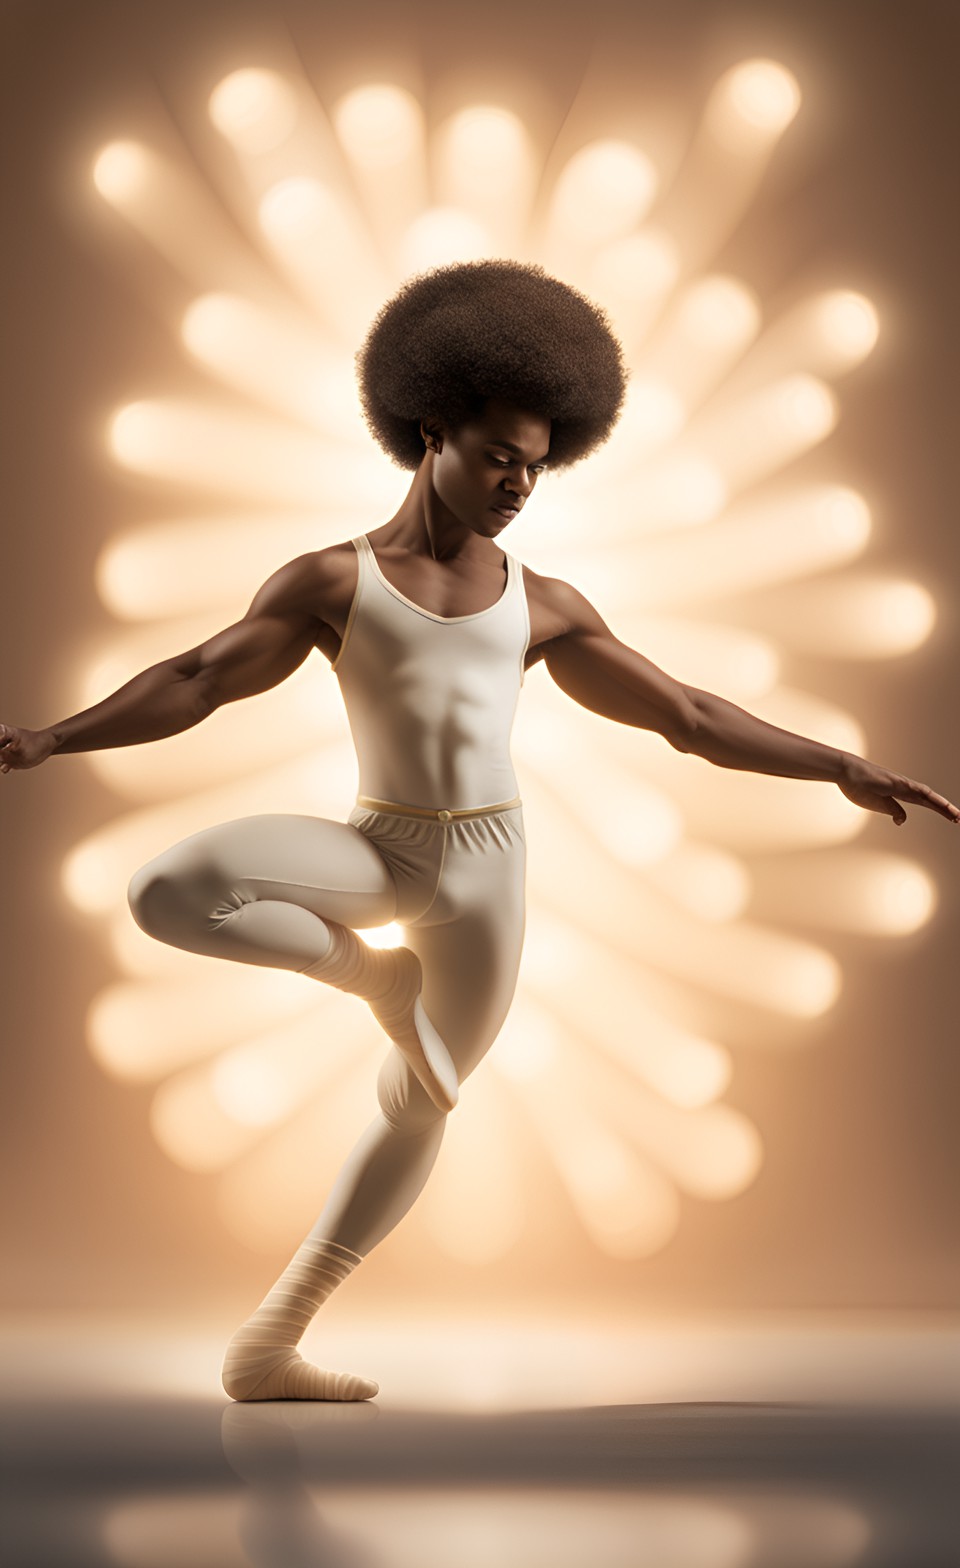 Jamaican magical ballet dancer Jamai205